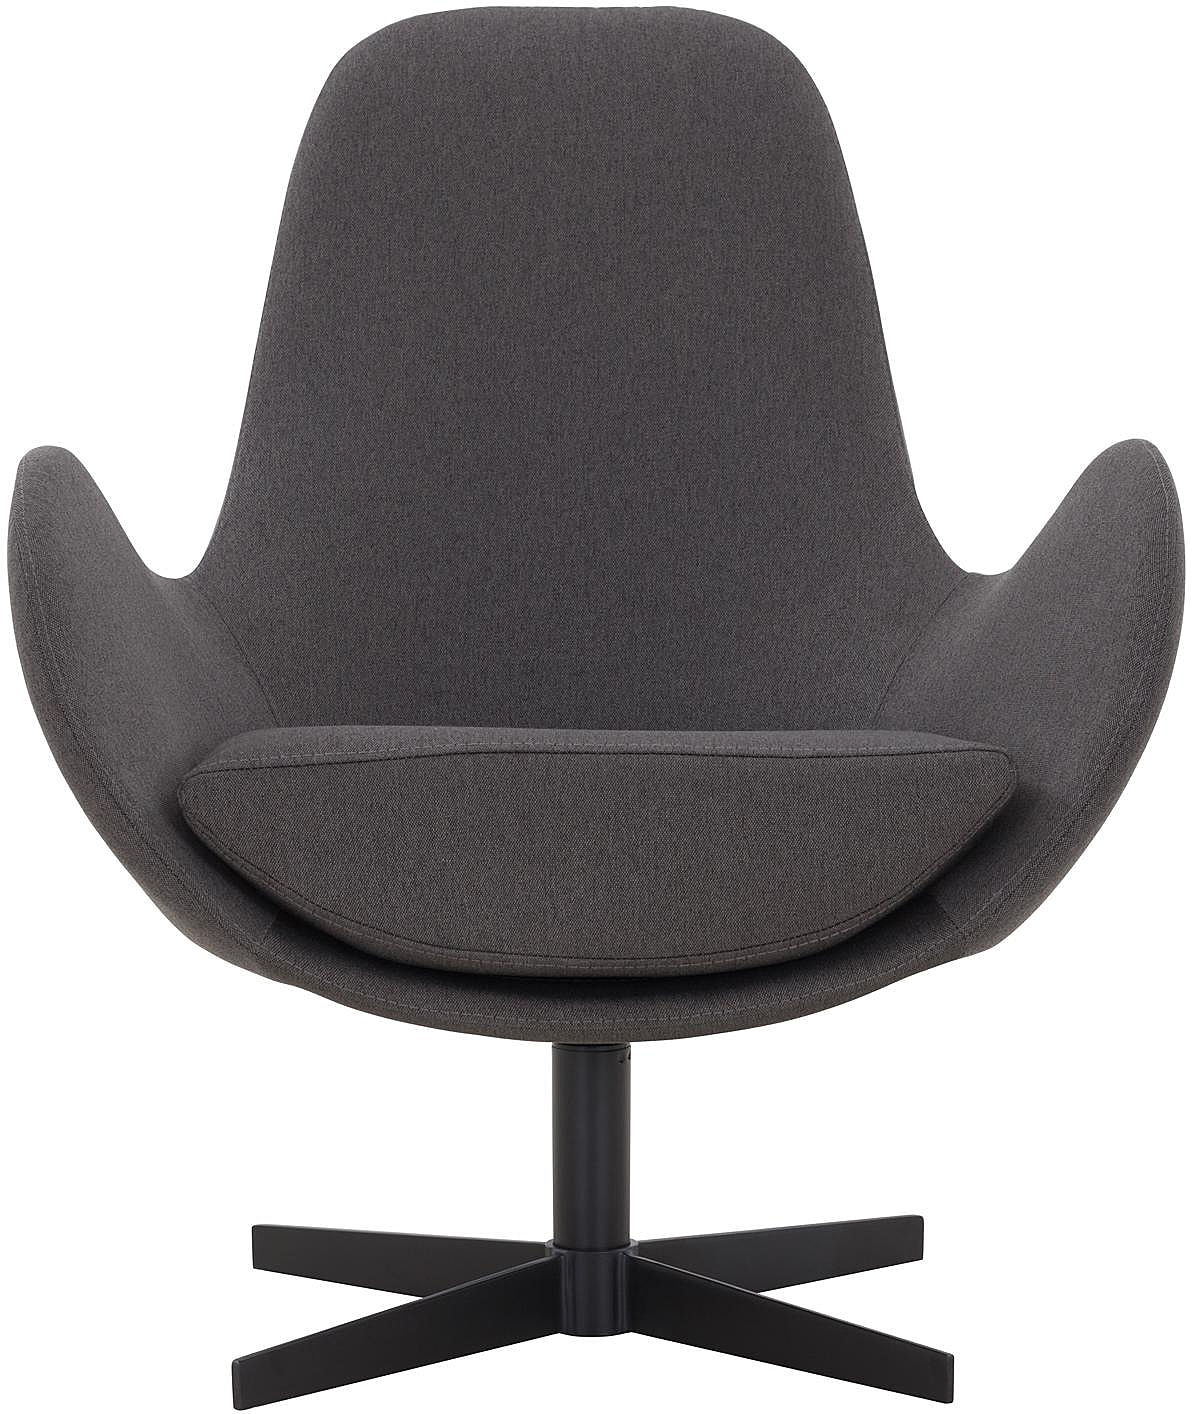 SalesFever Sessel mit Drehfunktion in Sitzkissen extra und dickem Dunkelgrau